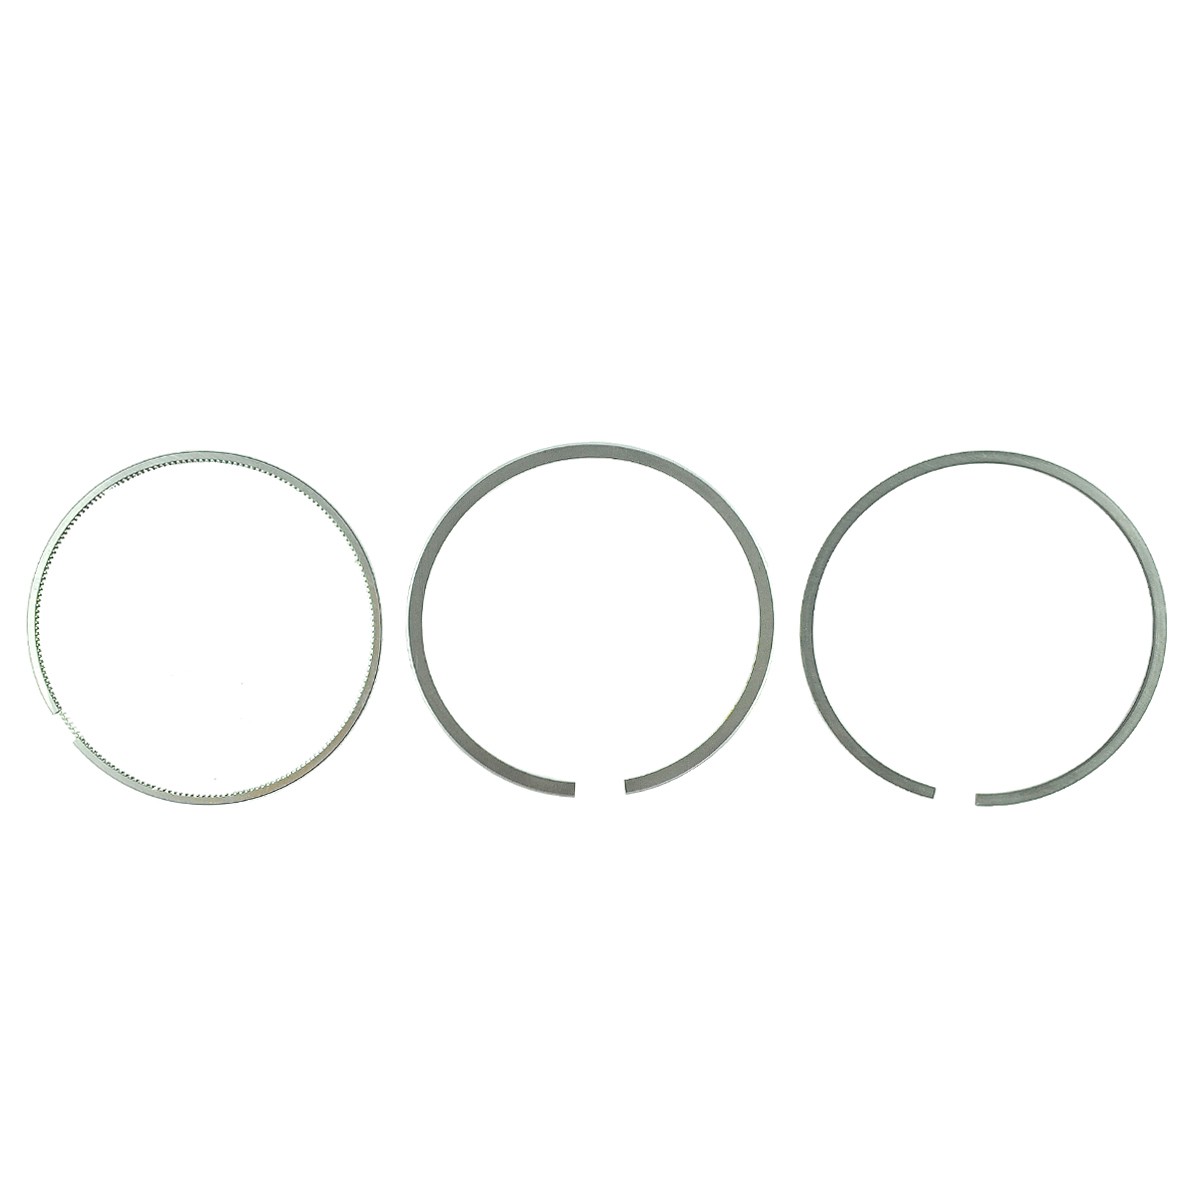 Pístní kroužky / Ø 83 mm / 2 x 2 x 4 mm / Kubota D1503/V2003 / 16419-21050 / 16467-21051